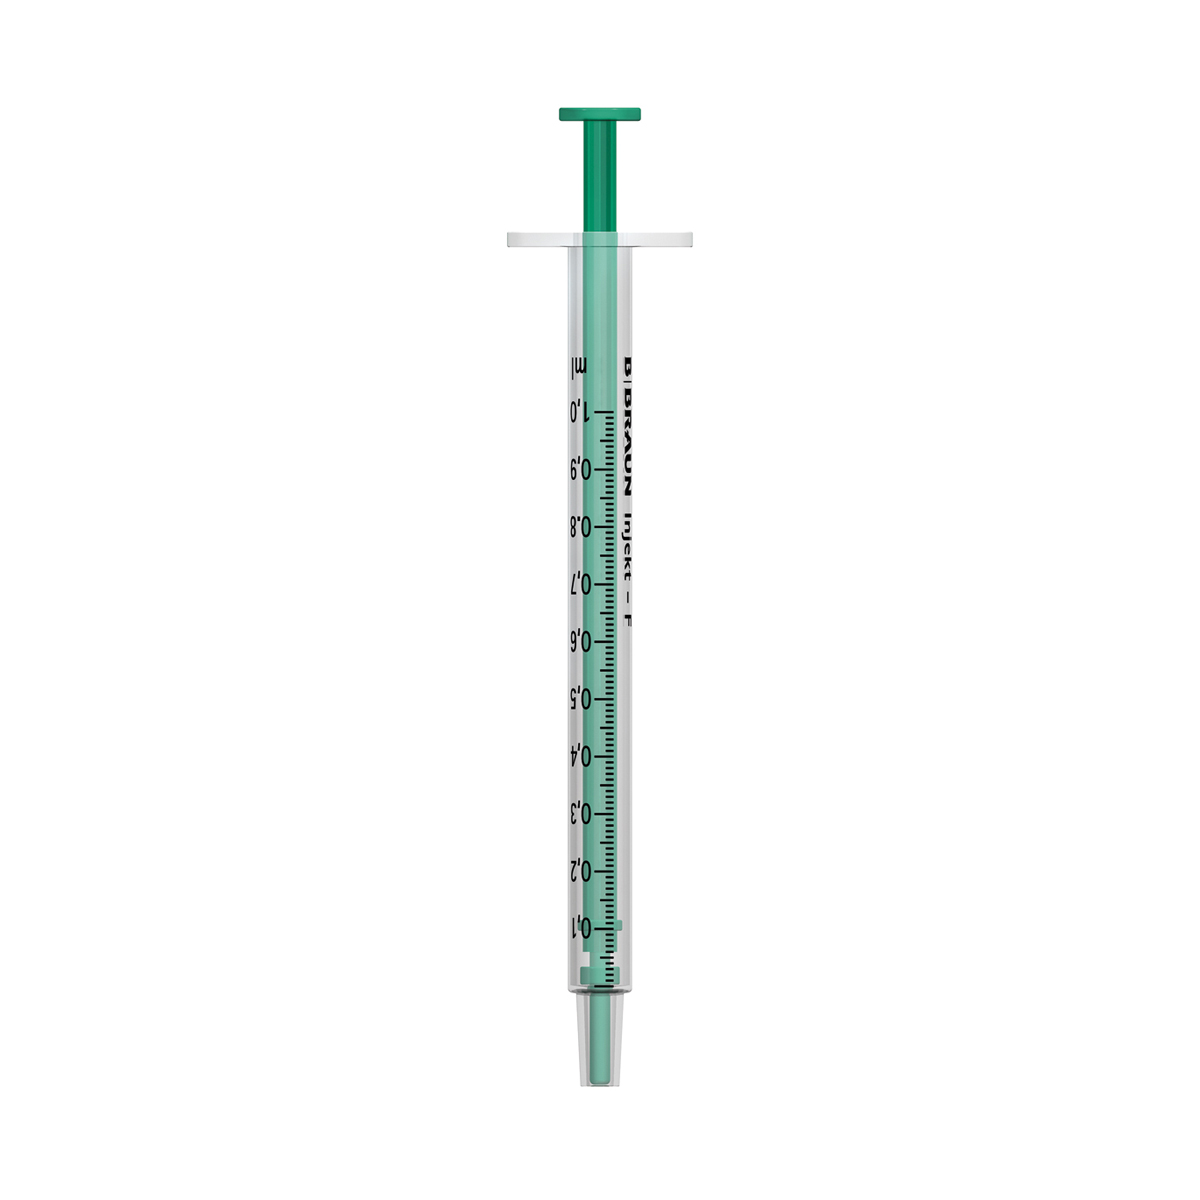 Injekt 1ml Reduced Dead Space Syringe Barrel